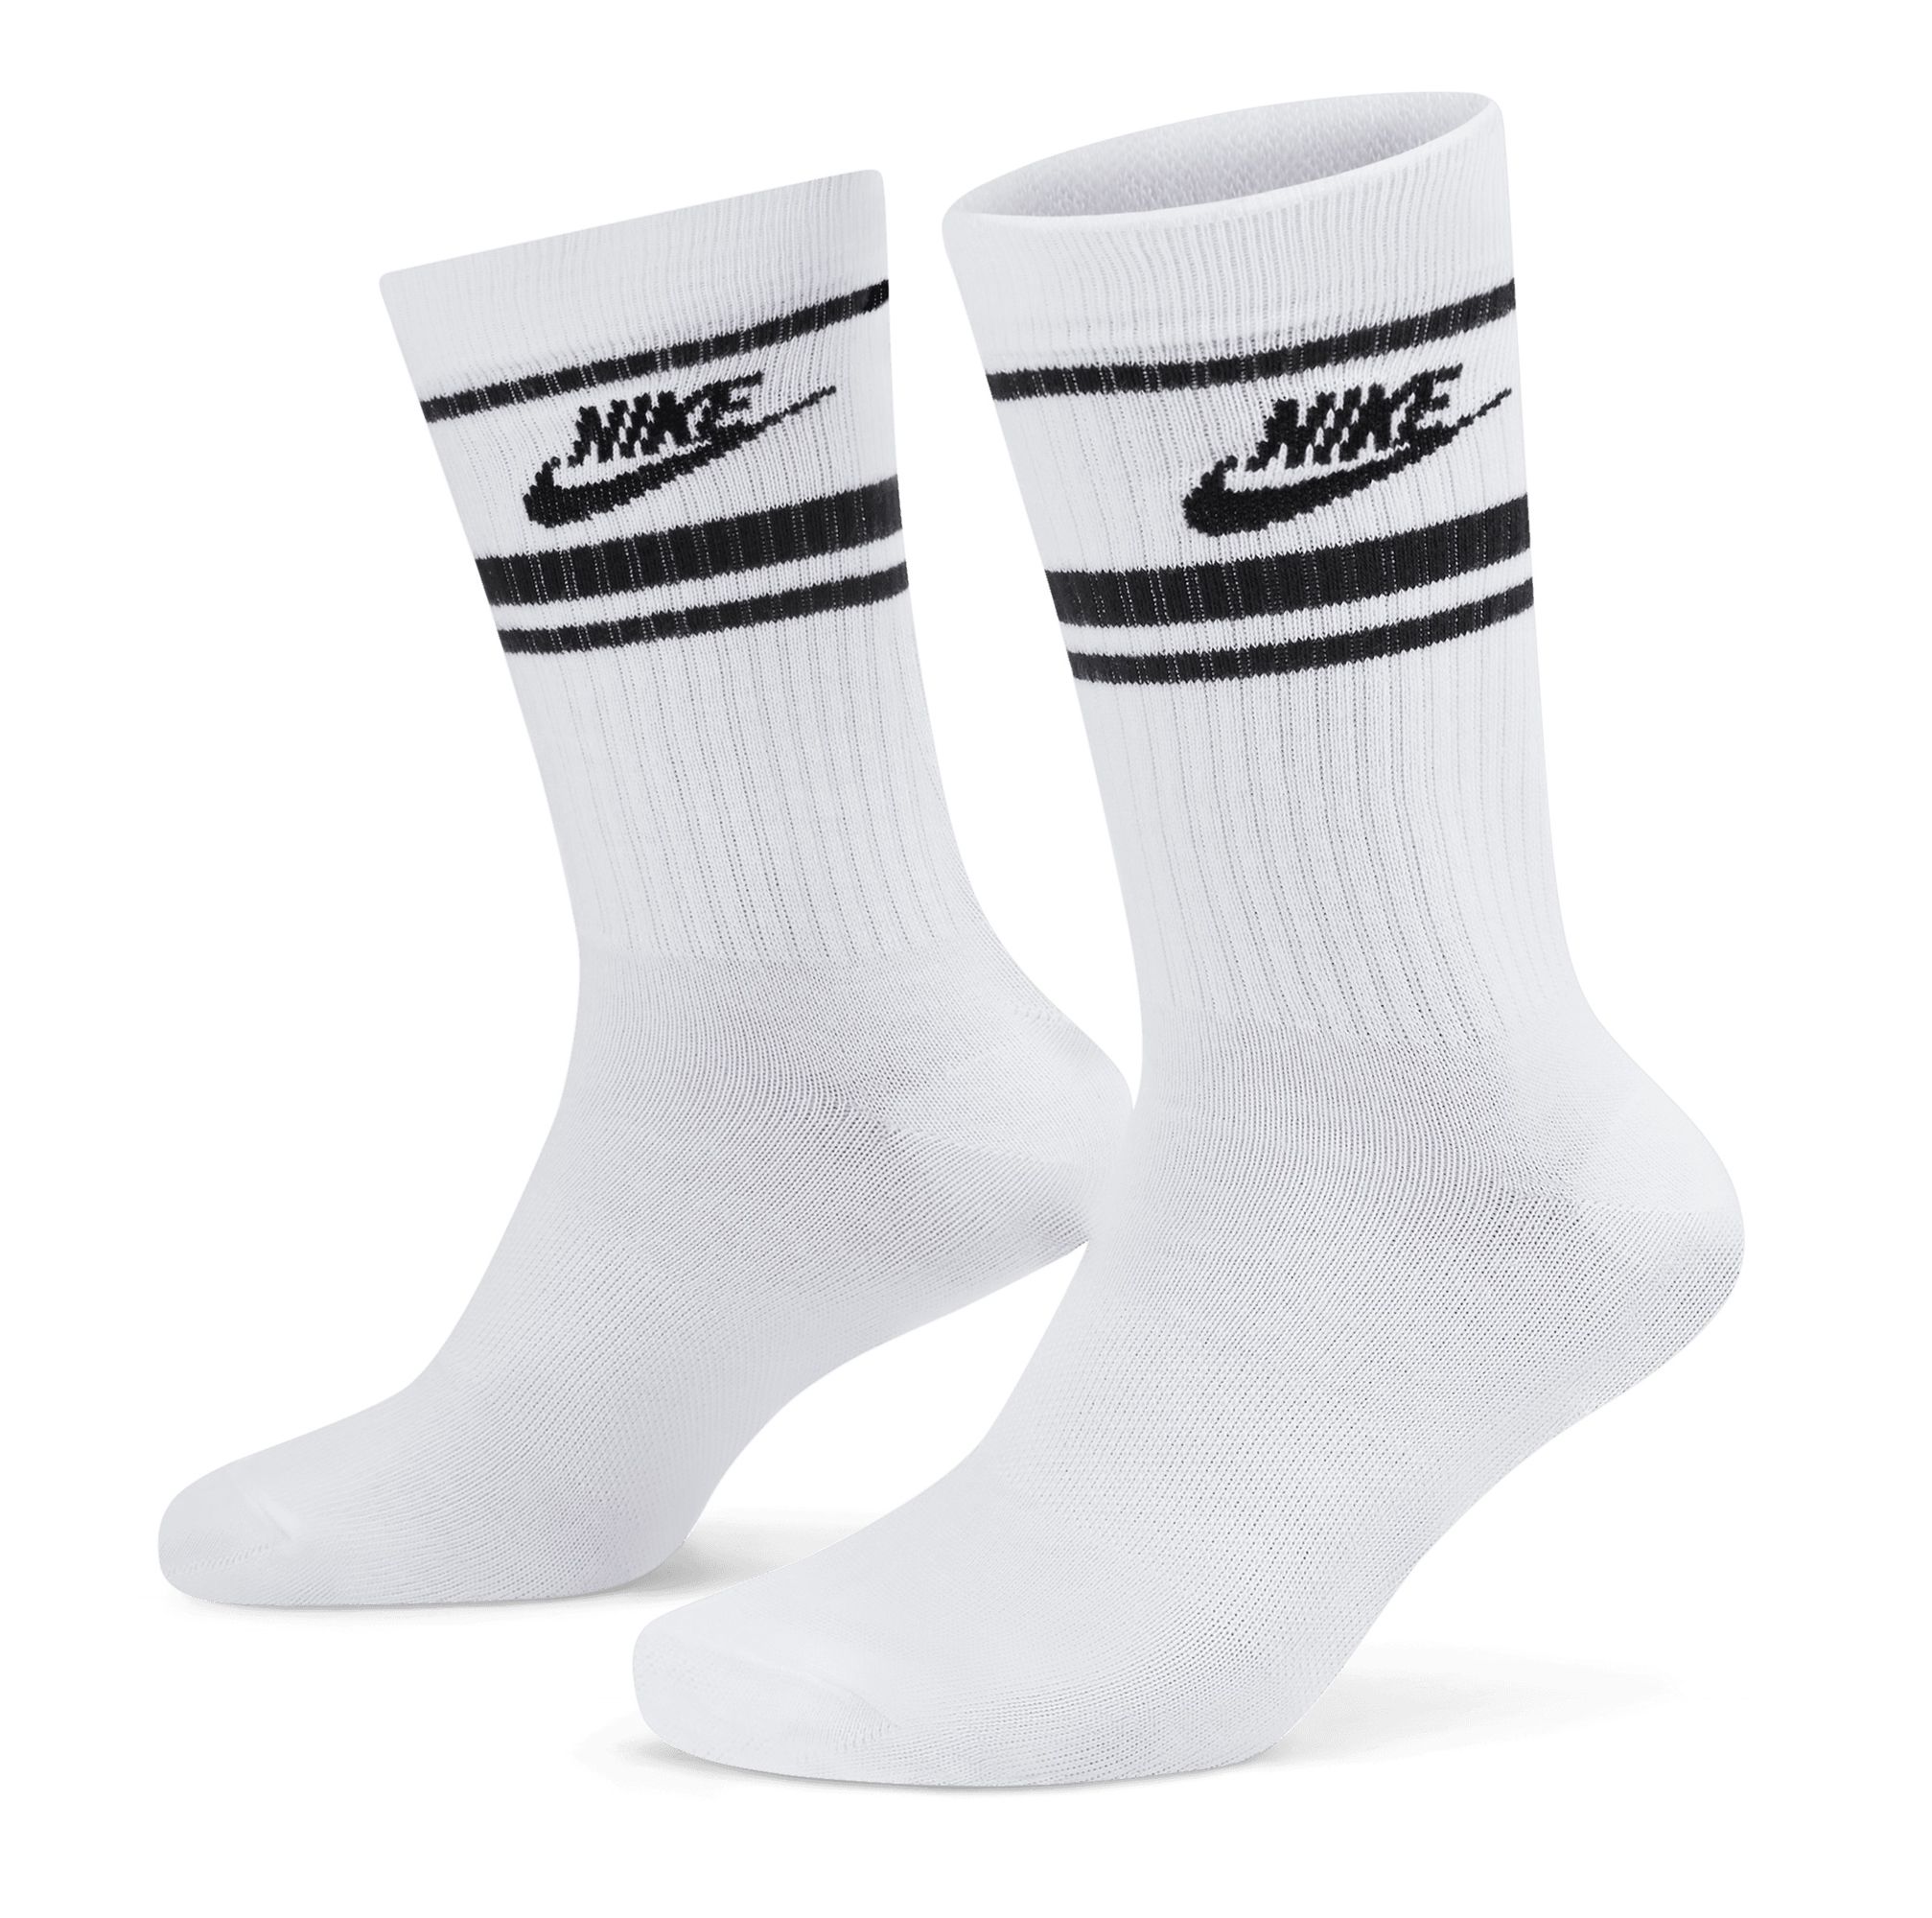 Носки Nike Essential Crew. Носки Nike everyday. Белые носки Nike everyday. Nike Sportswear everyday Essential. Купить носки найк оригинал